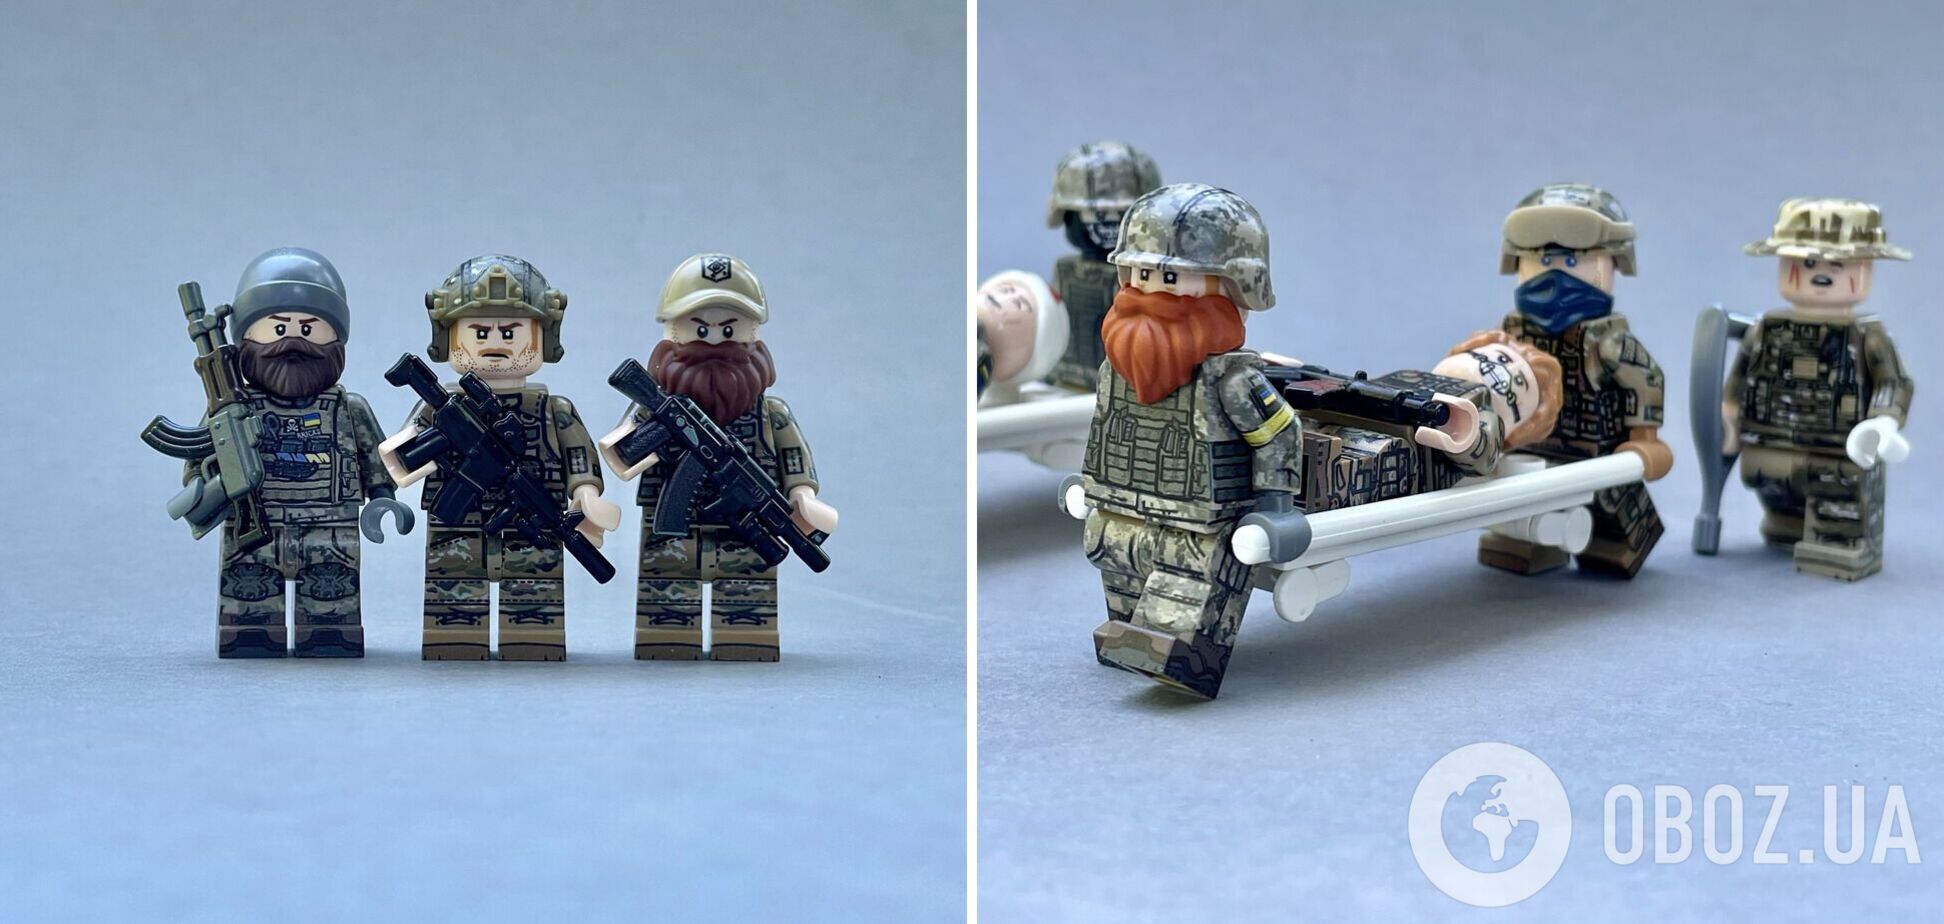 Новые фигурки LEGO посвящены защитникам 'Азовстали'